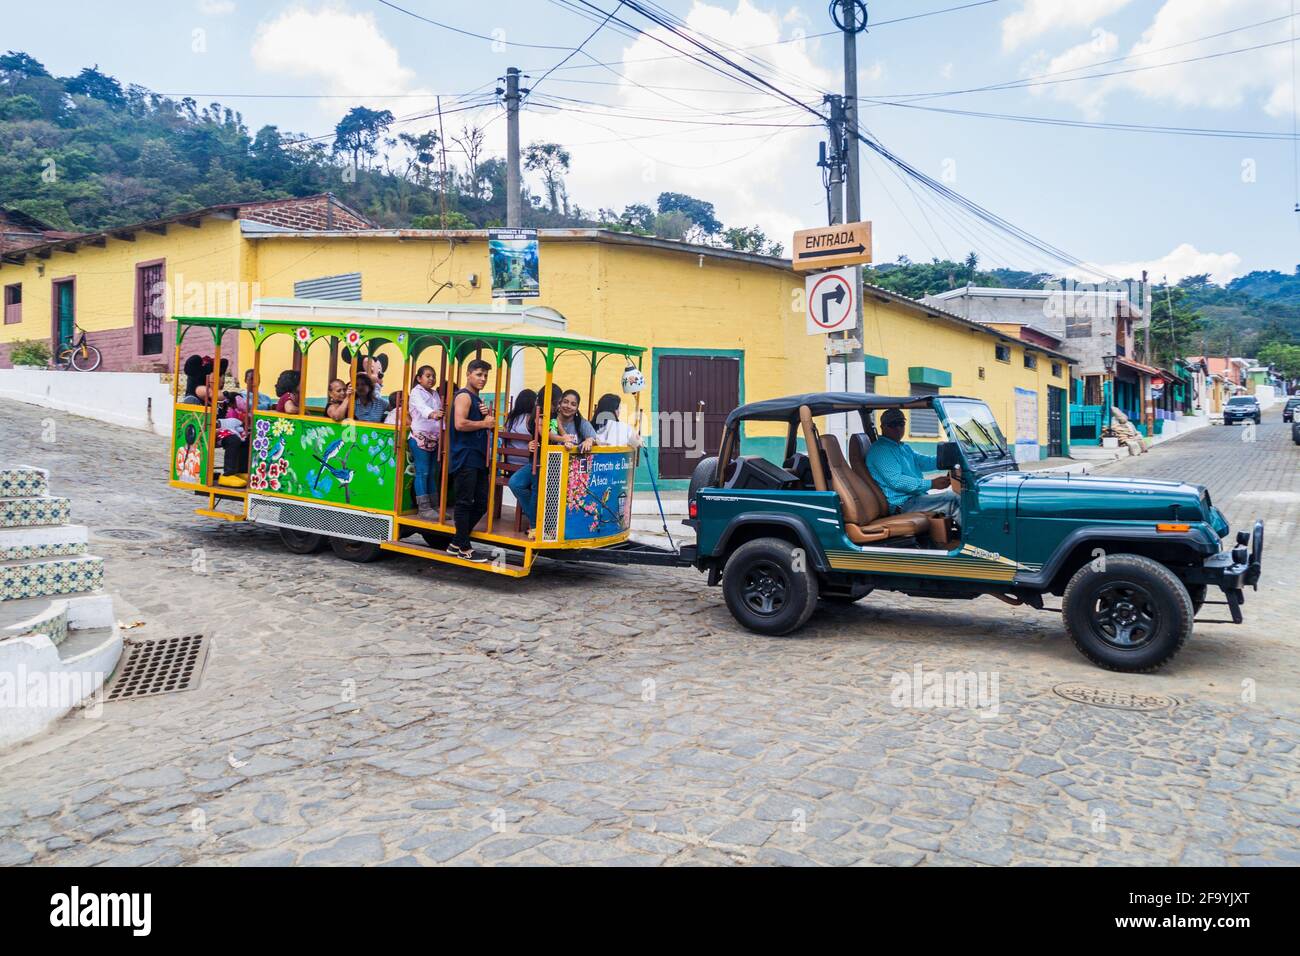 CONCEPCION DE ATACO, EL SALVADOR - 3 AVRIL 2016 : le tramway touristique passe dans les rues du village de Concepcion de Ataco. Banque D'Images